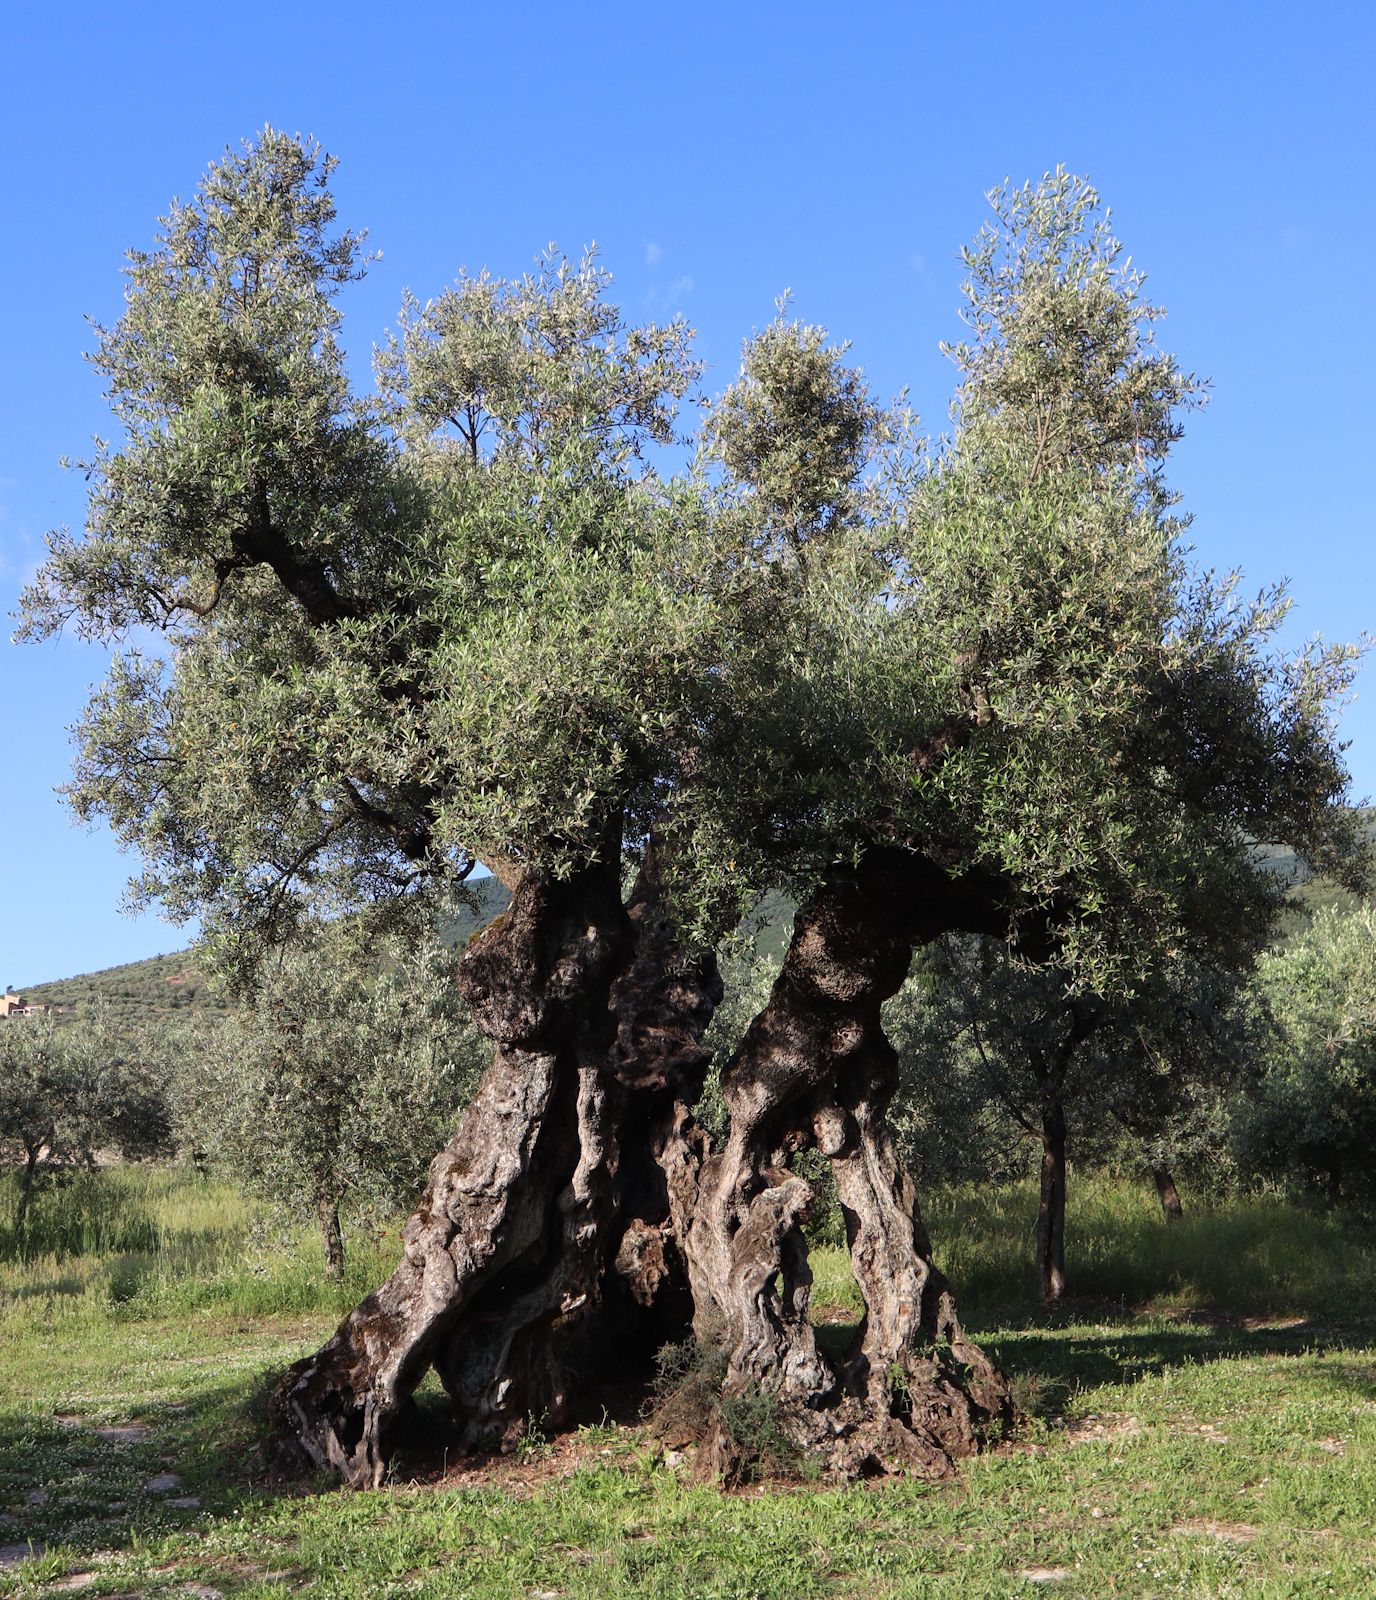 der &bdquoOlivenbaum des Ämilianus&rdquo in Bovara bei Trevi, laut Tafel 5 Meter hoch und 9,1 Meter Durchmesser